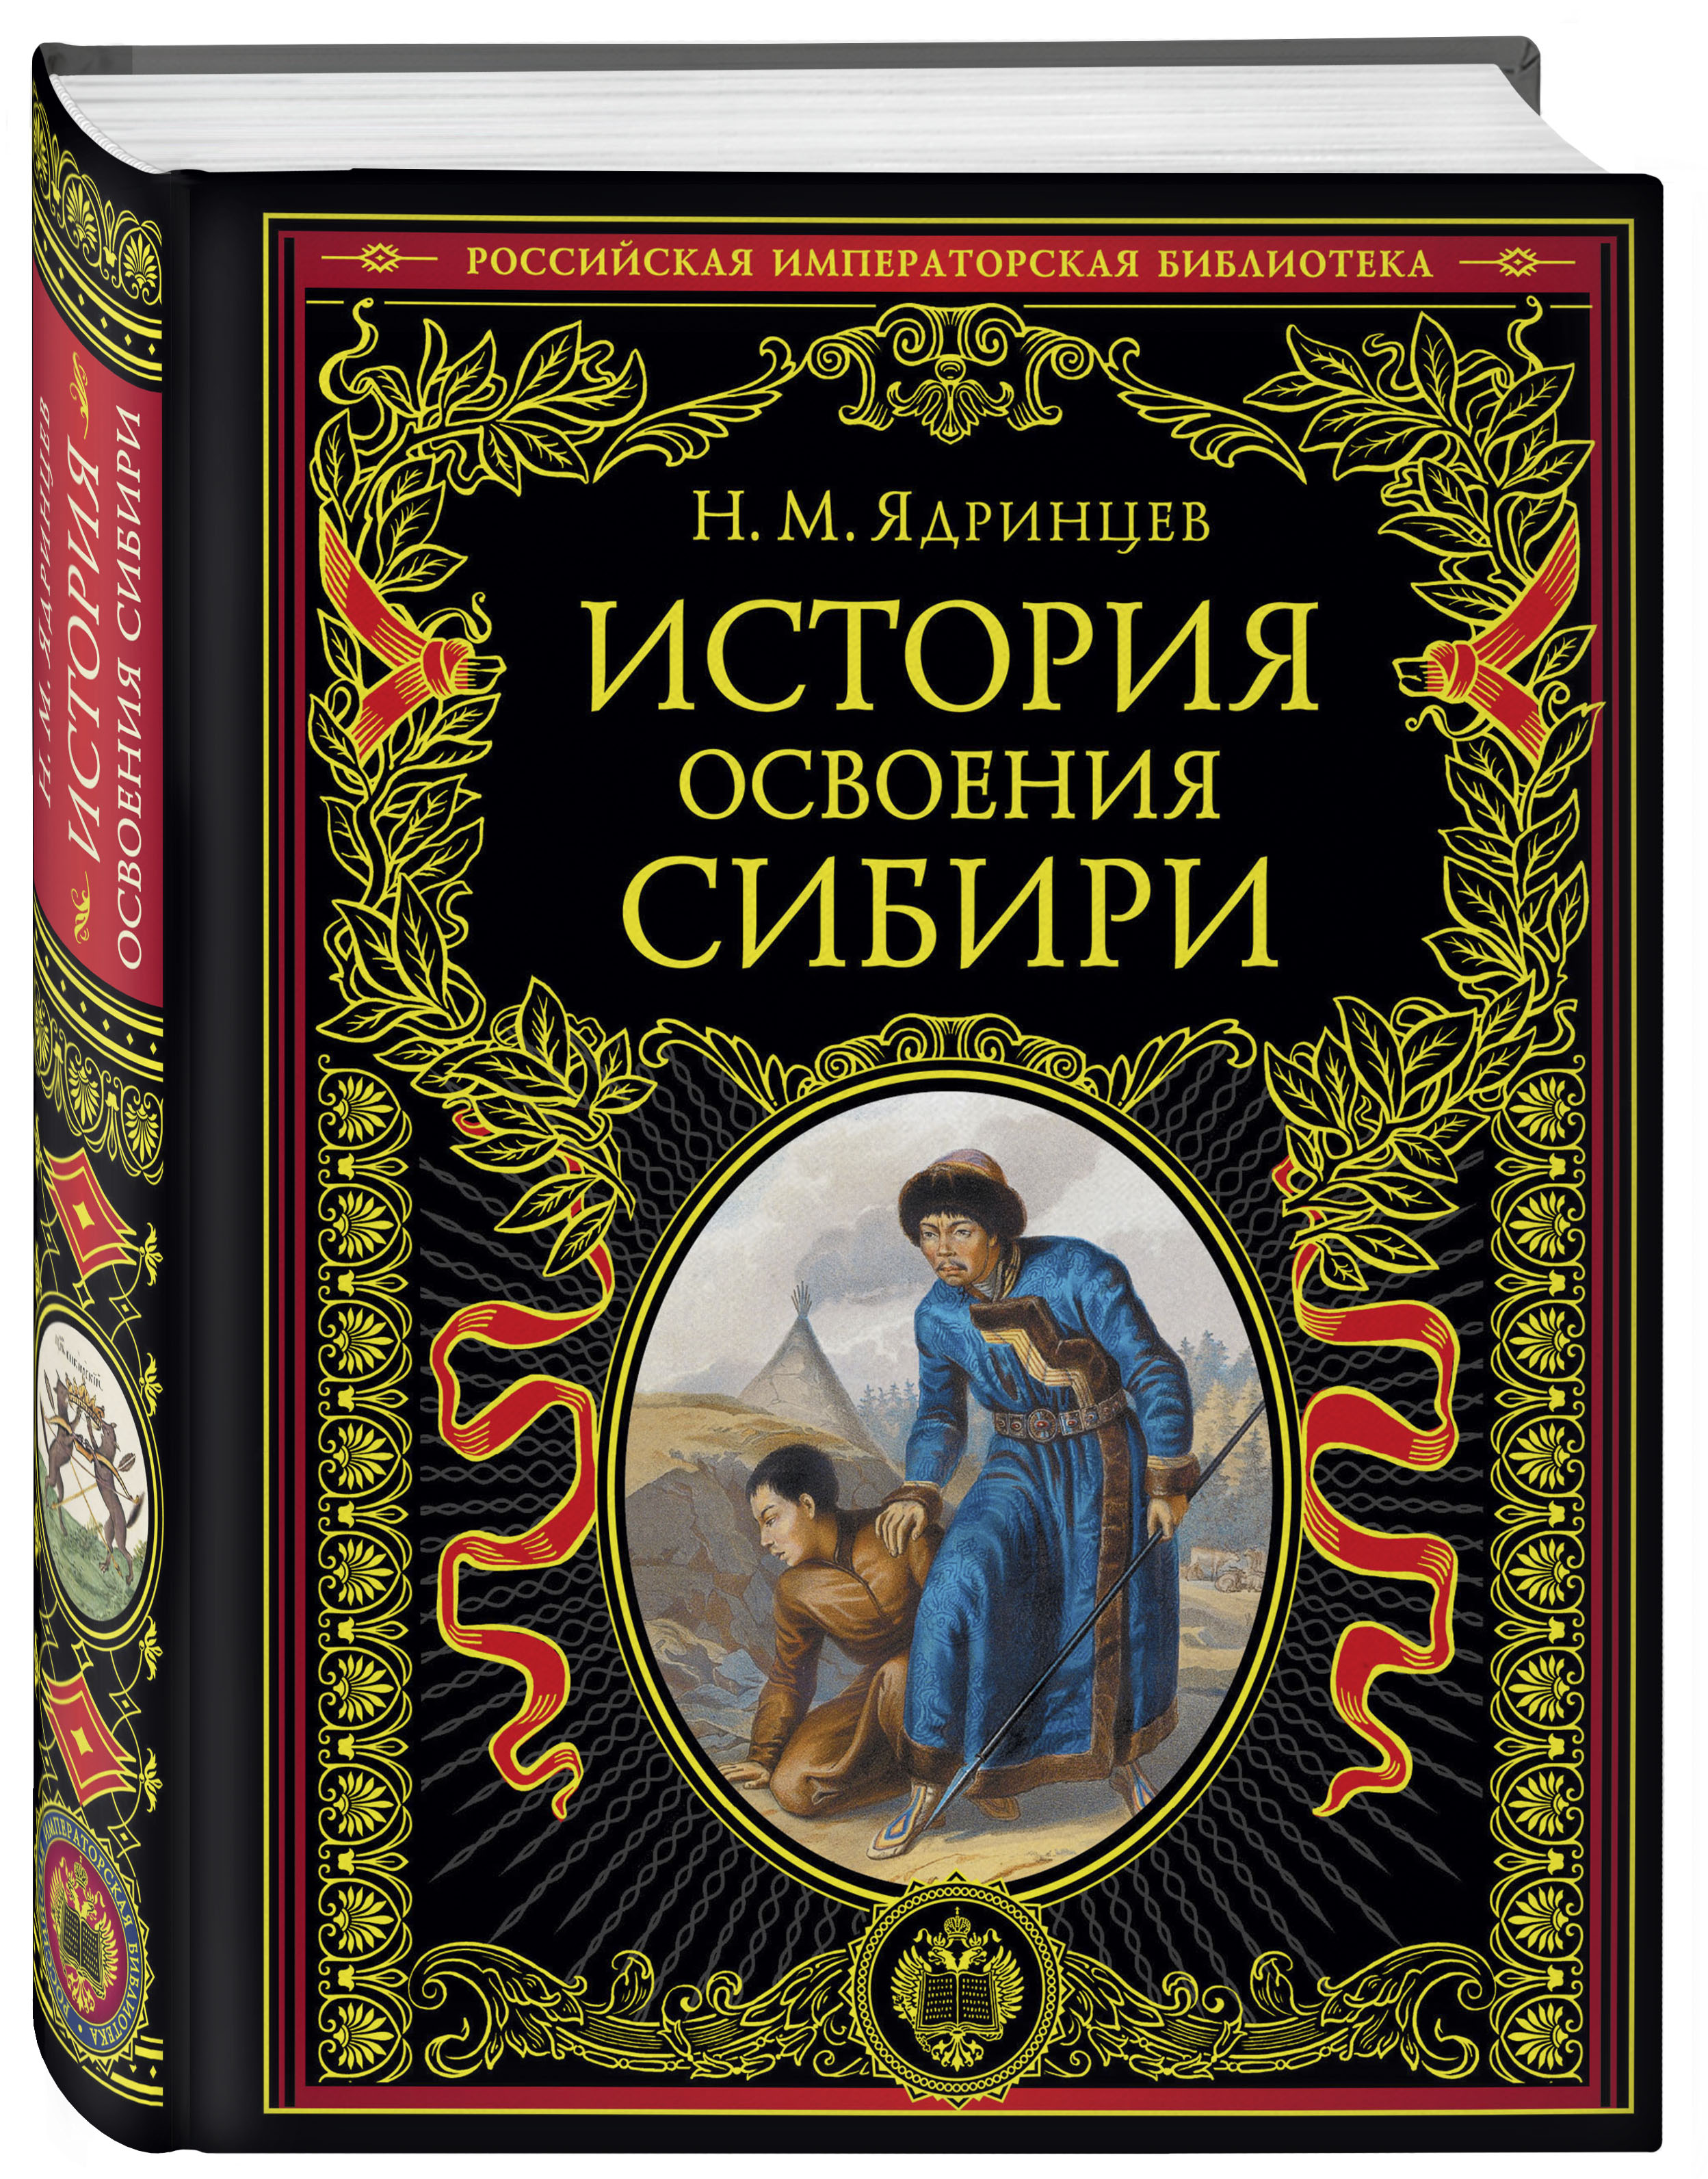 Сборник История освоения Сибири (переработанное и обновленное издание)